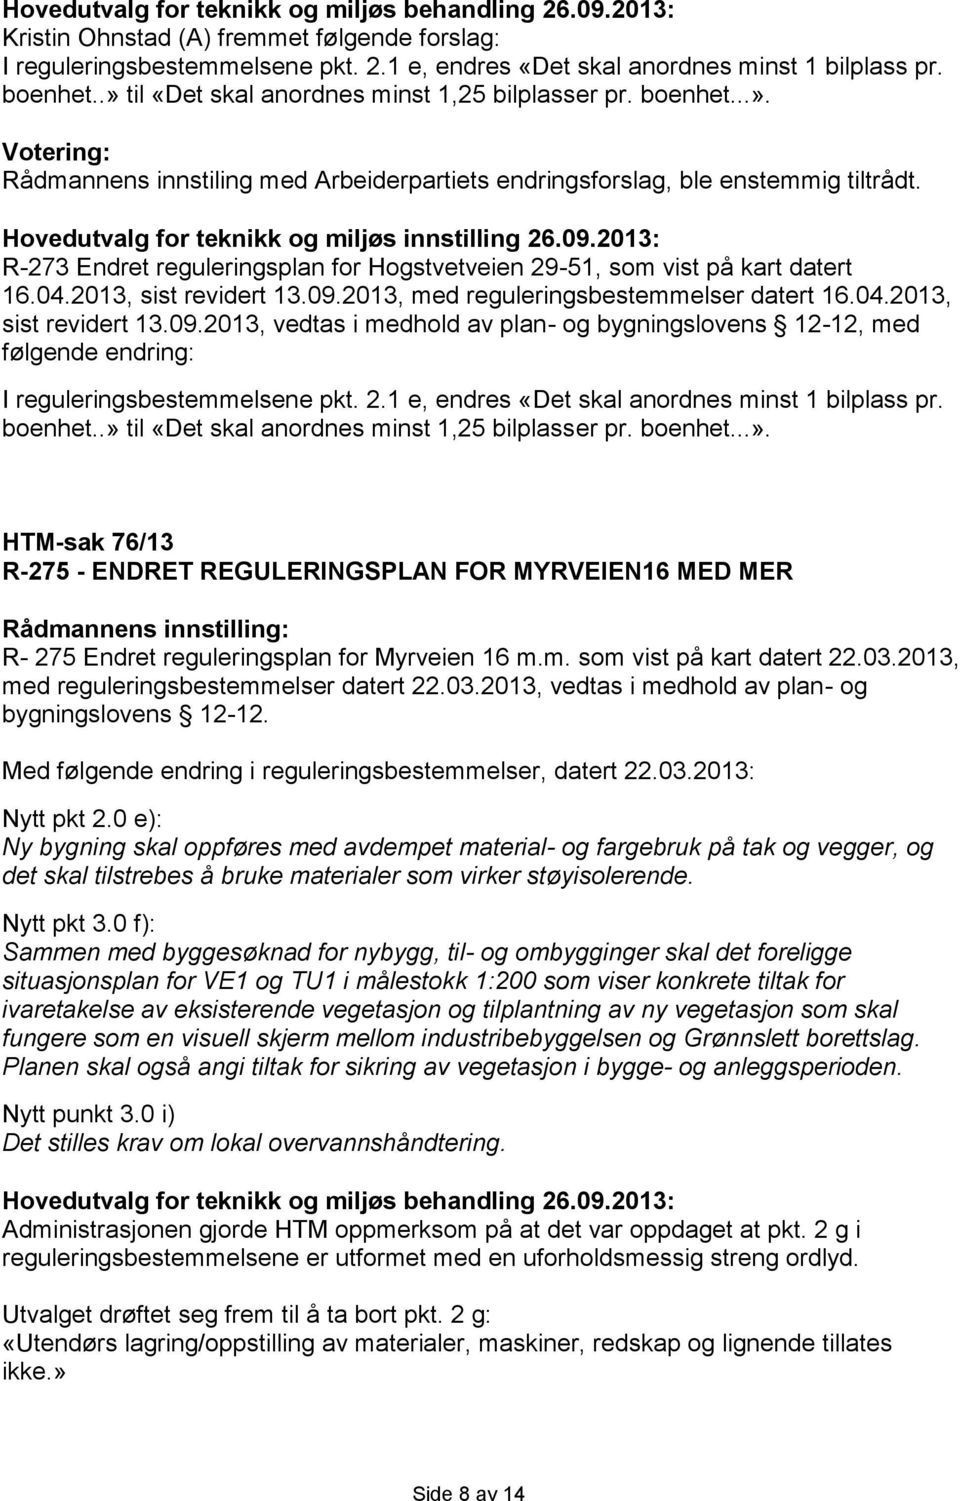 2013: R-273 Endret reguleringsplan for Hogstvetveien 29-51, som vist på kart datert 16.04.2013, sist revidert 13.09.